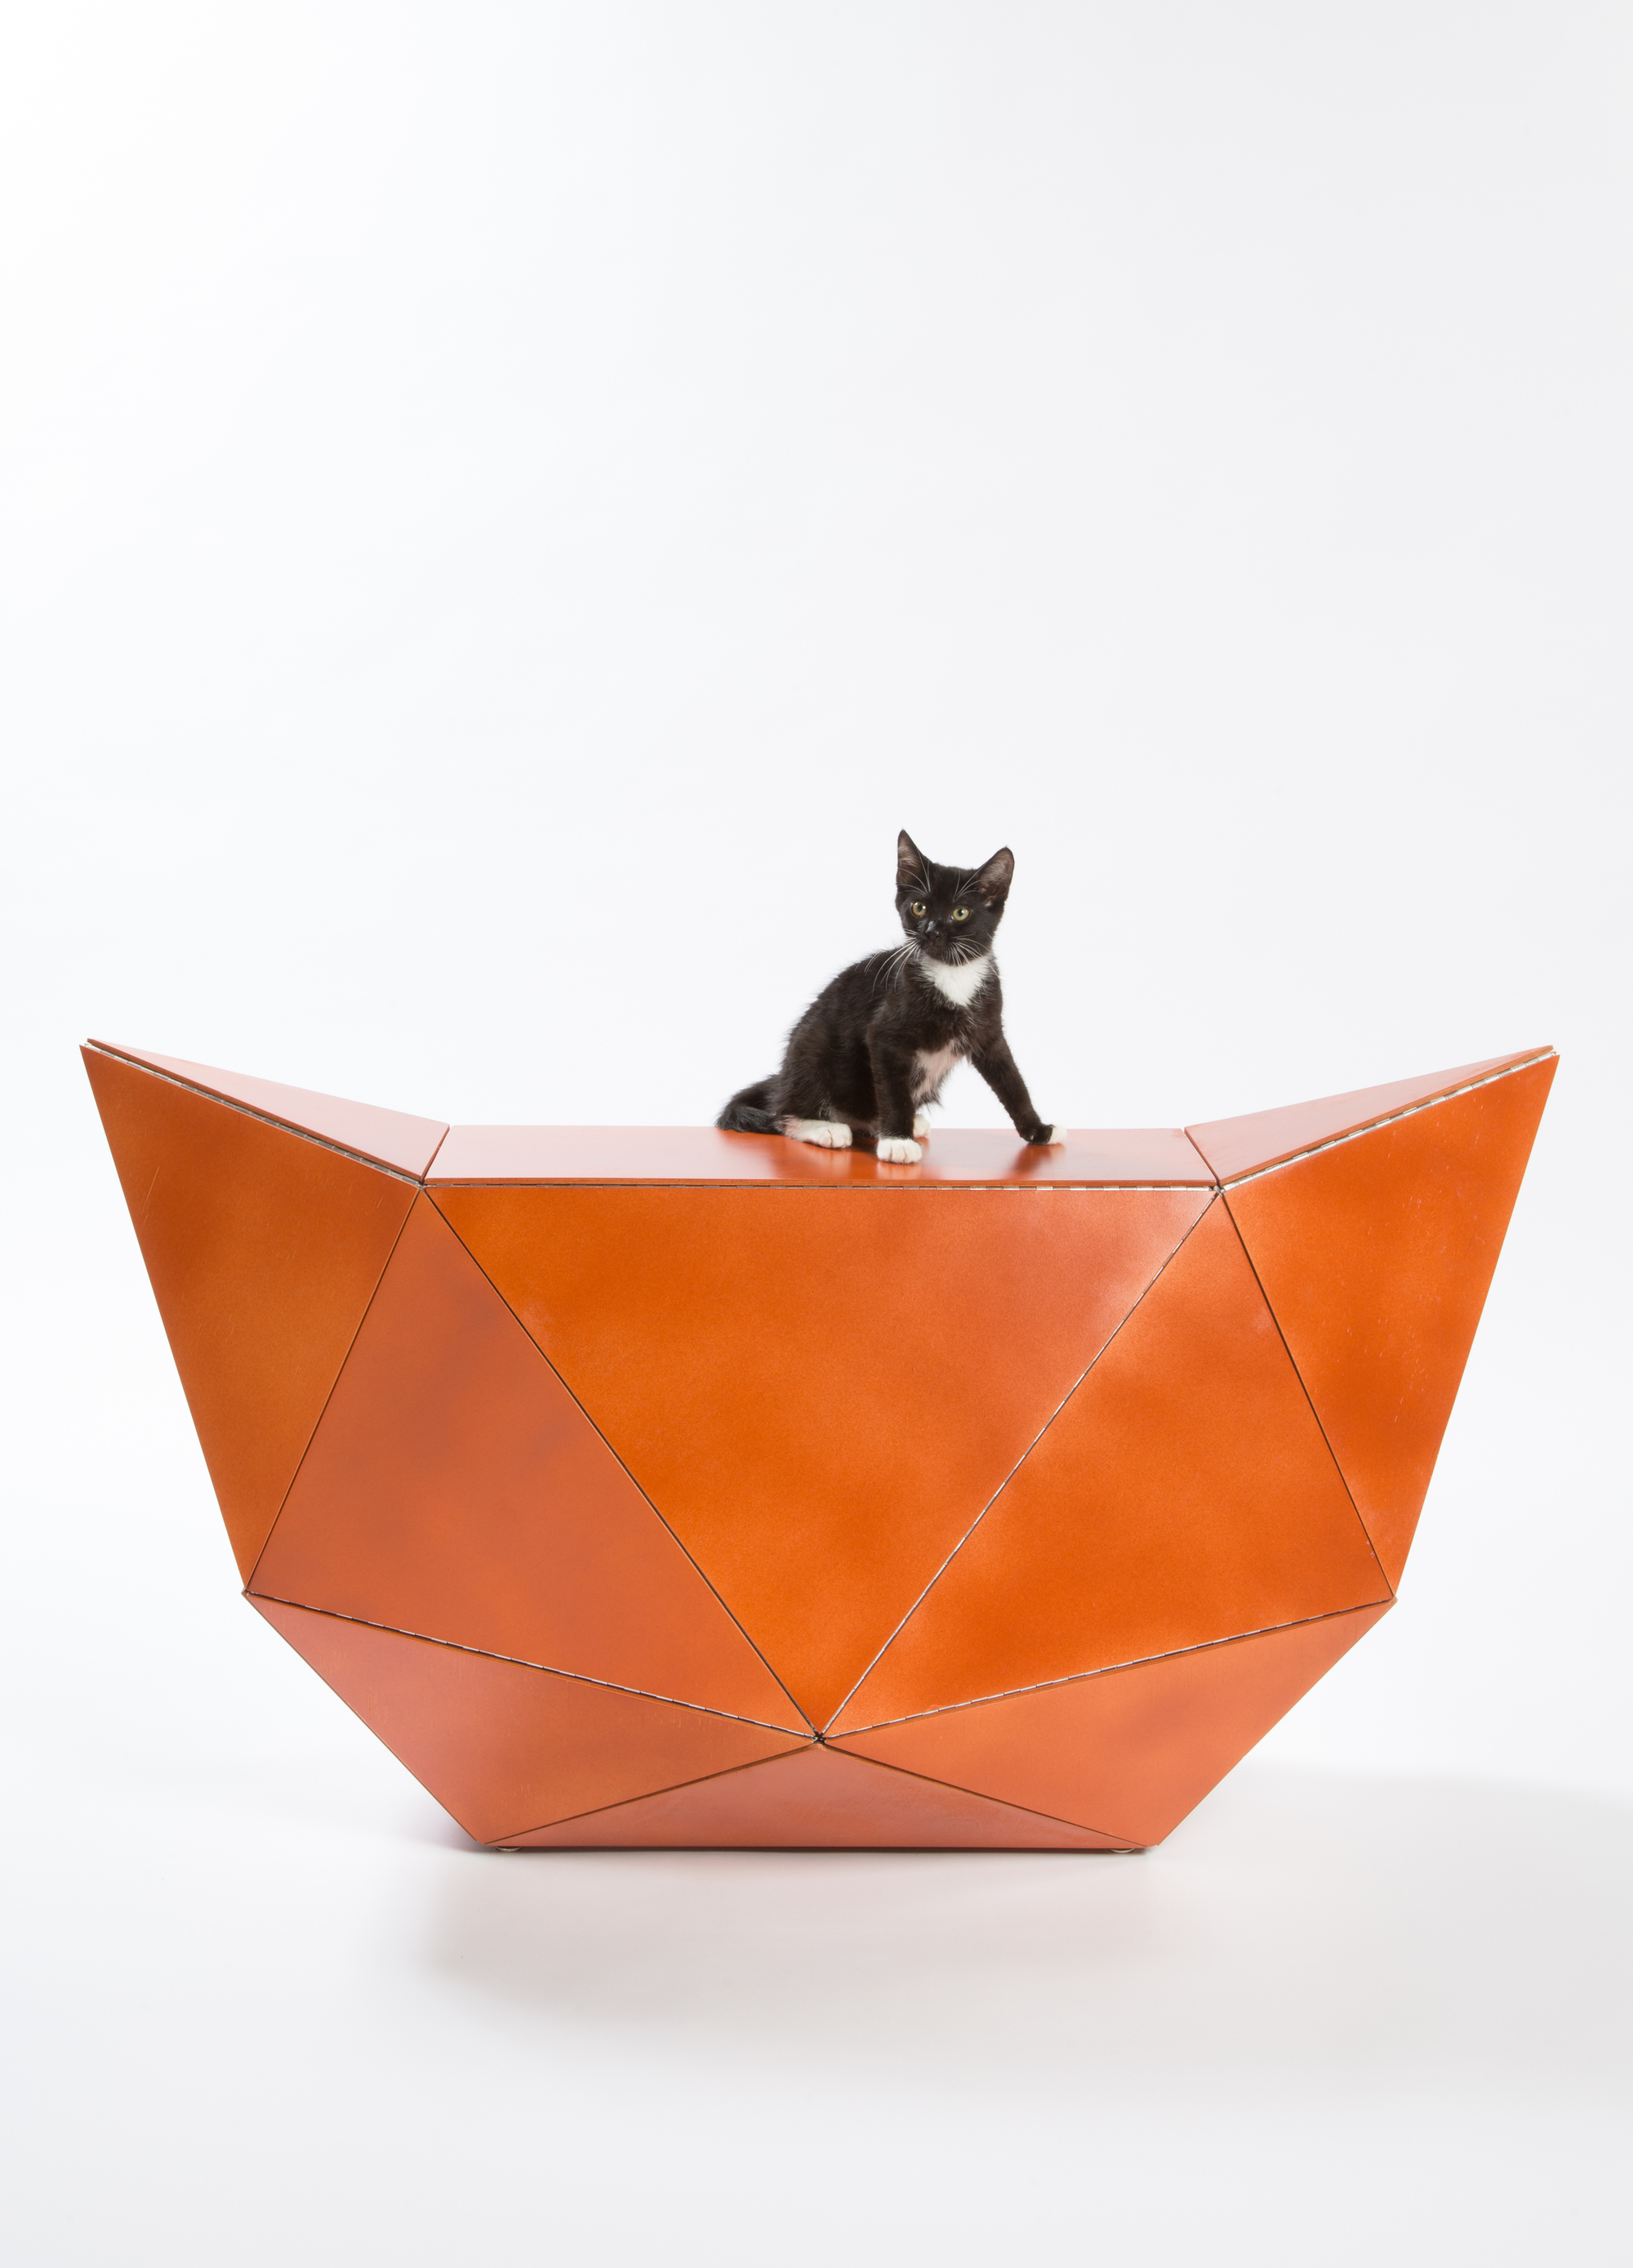 12 mimar sokak kedilerine para toplamak için kedi evi tasarladı